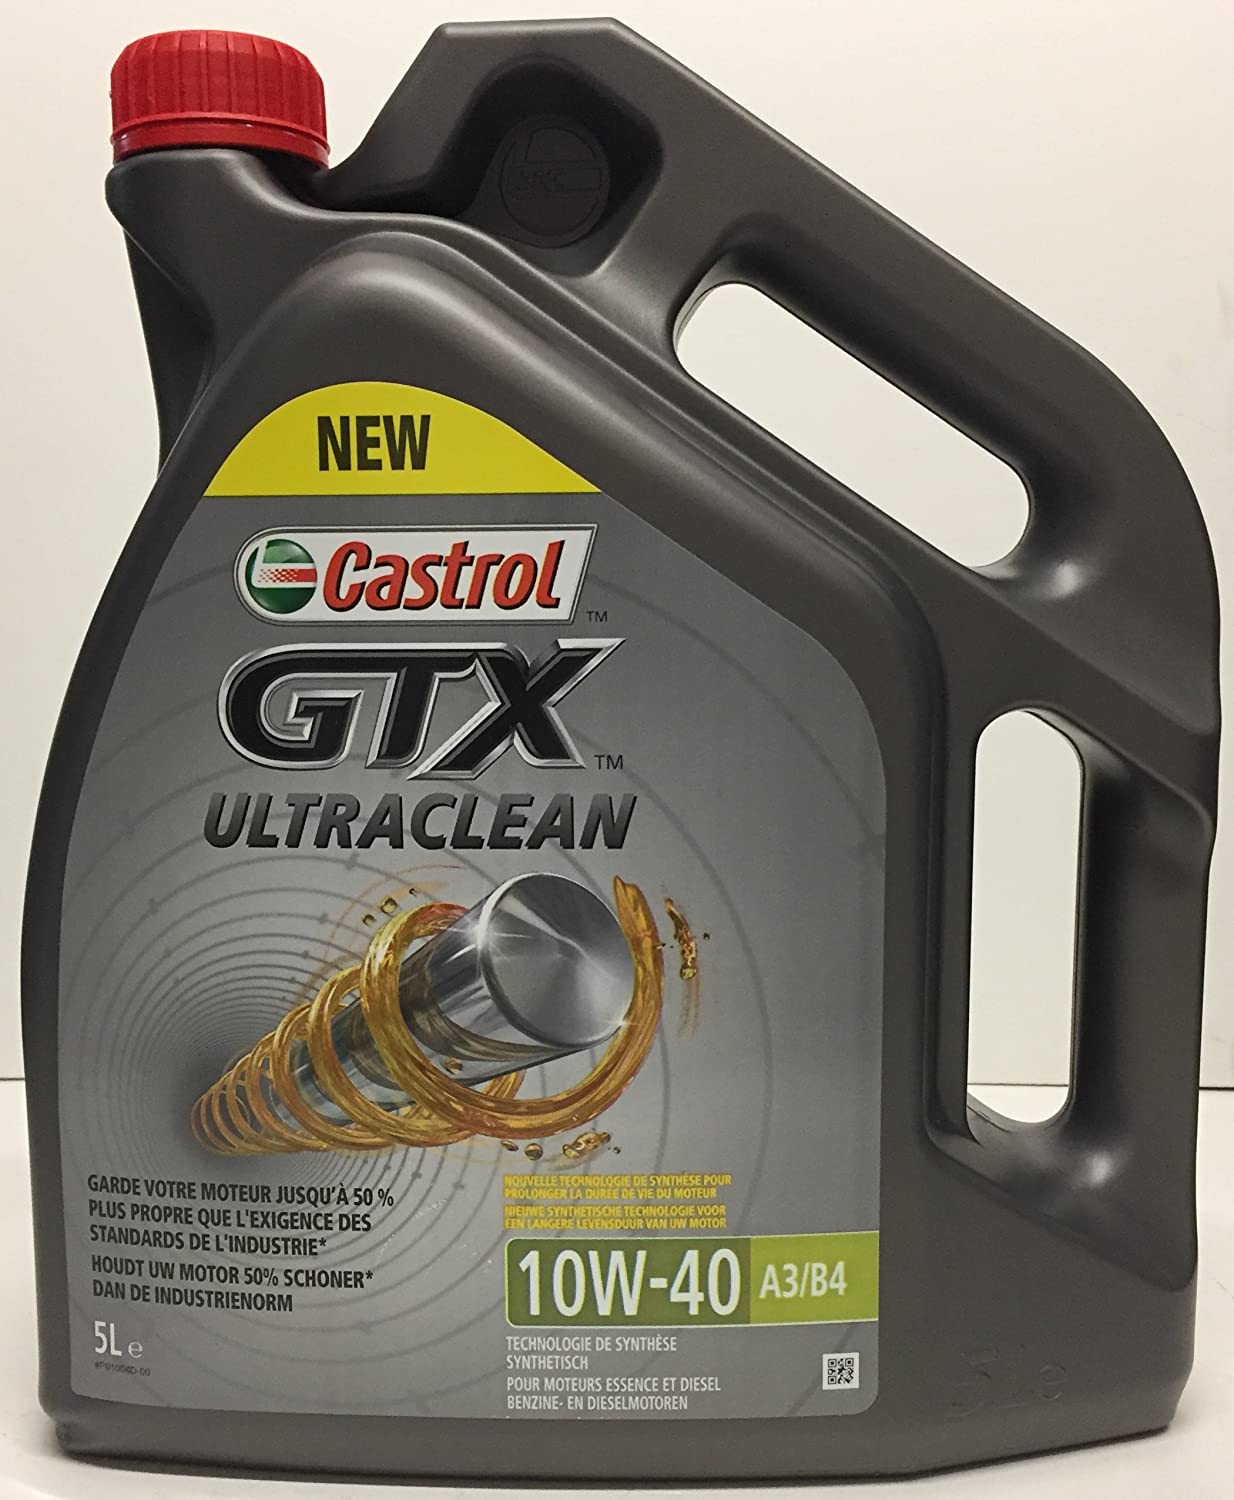 Castrol GTX Ultraclean 10W-40